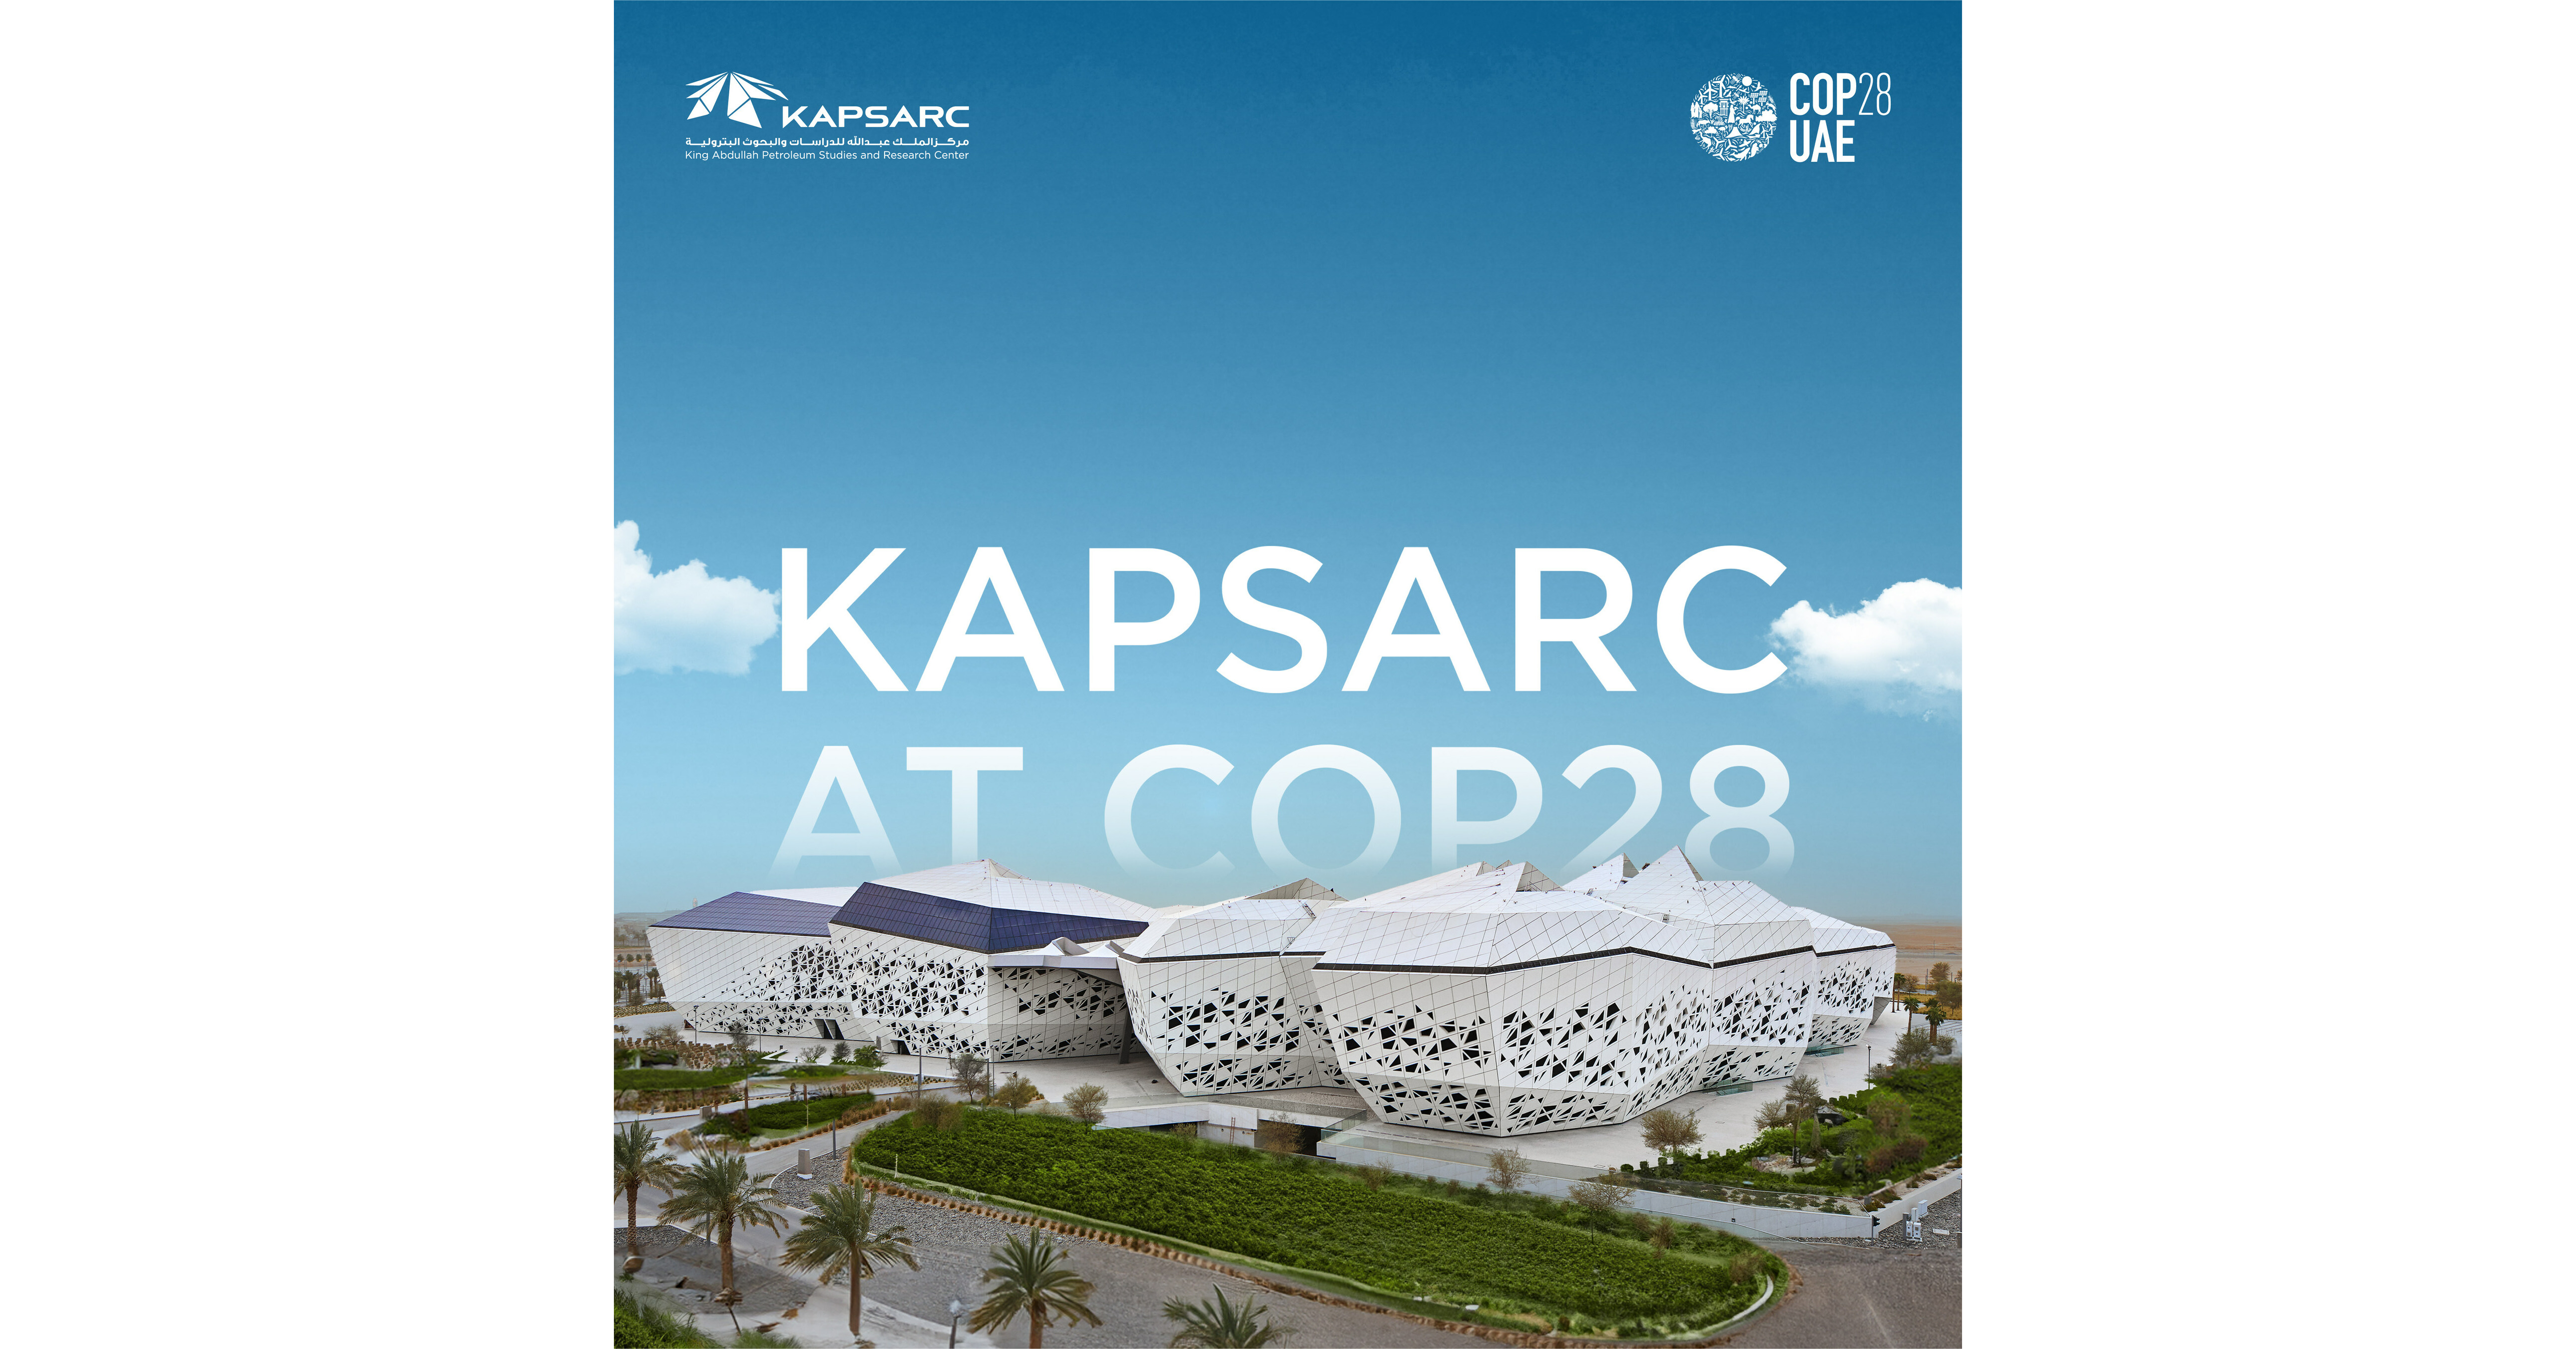 دور كابسارك النشط في مؤتمر الأمم المتحدة المعني بتغير المناخ (COP28).